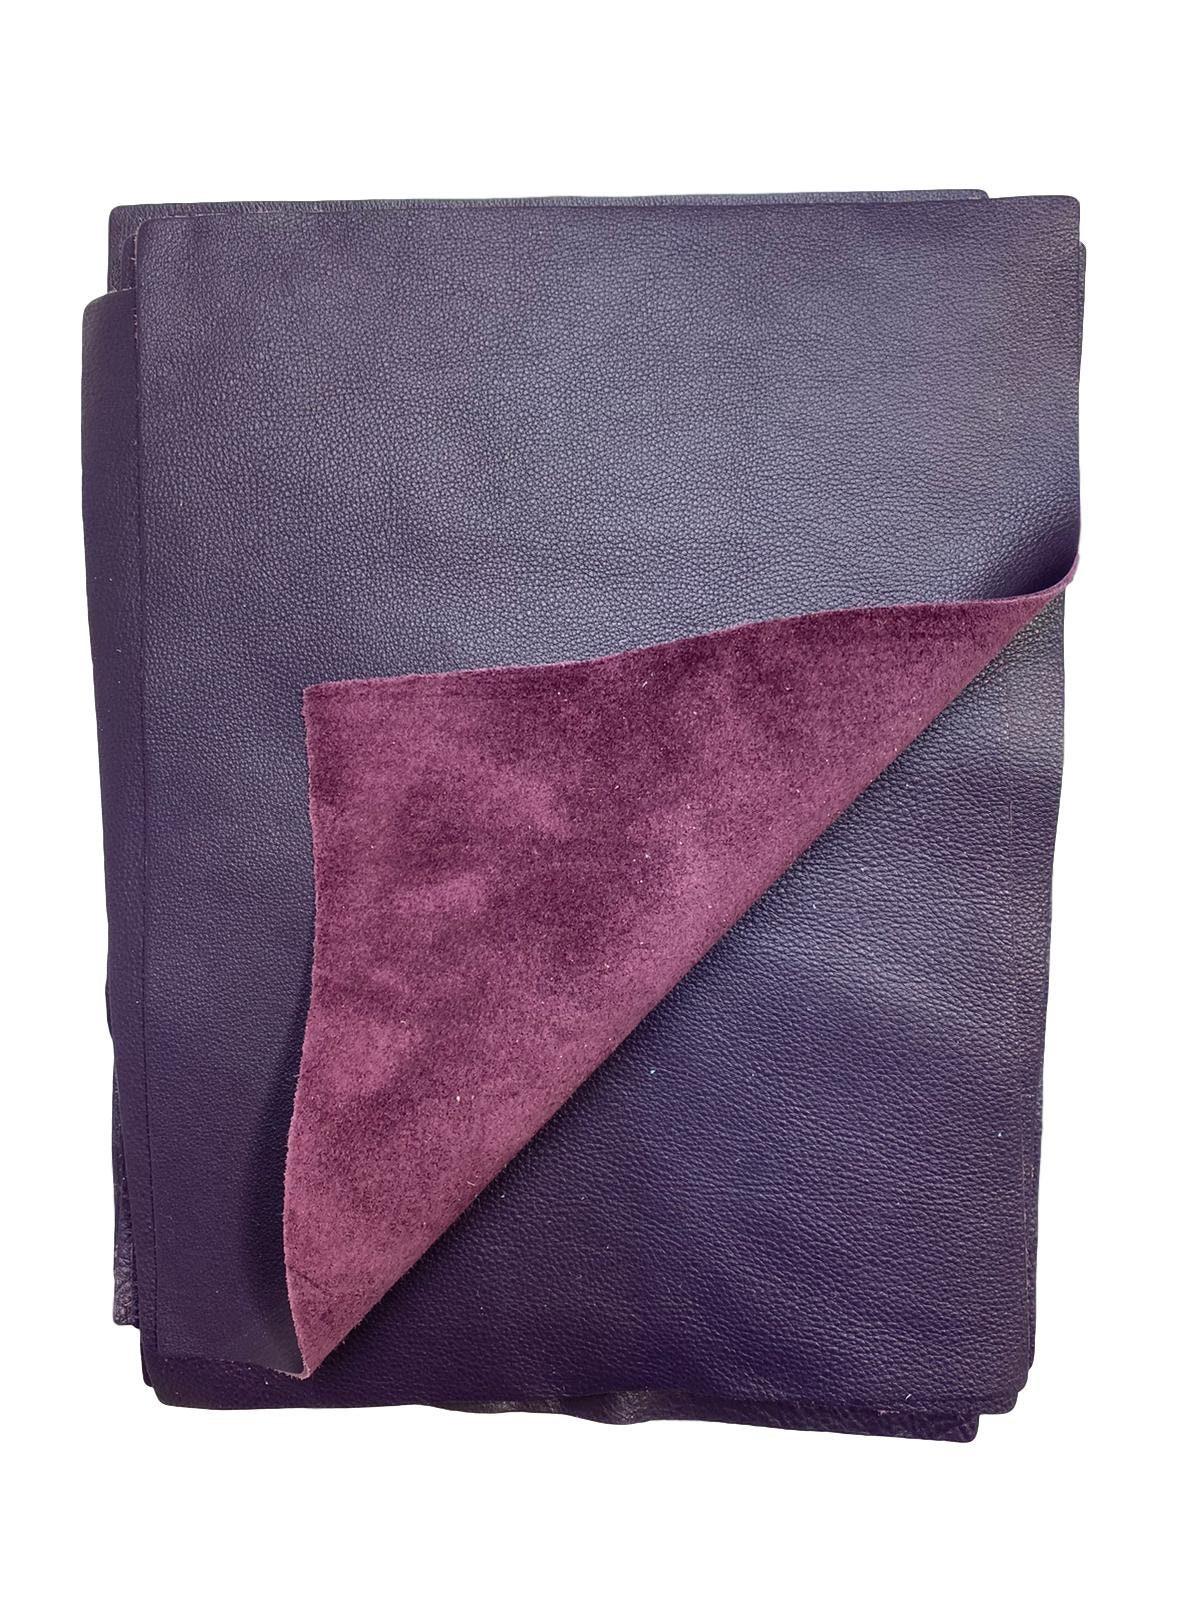 Grape Purple Cow Leather: 8.5 X 11 Pre Cut Pieces - Etsy